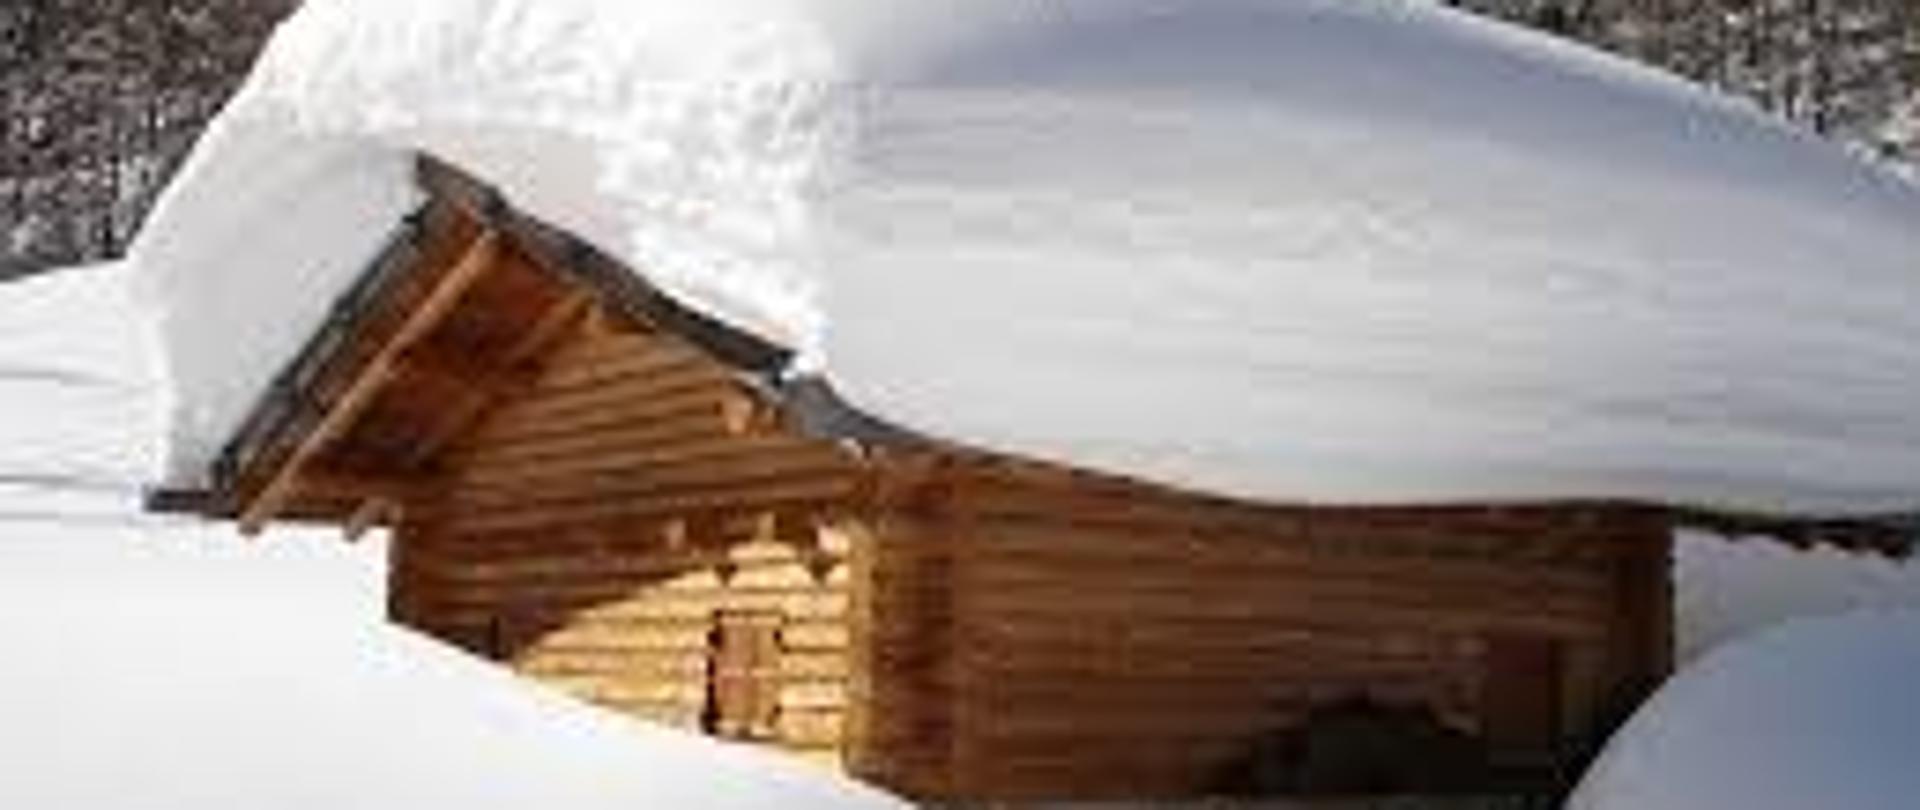 Zdjęcie przedstawia drewnianą chatę z kilkudziesięcio cenymetrową pokrywą śniegu.